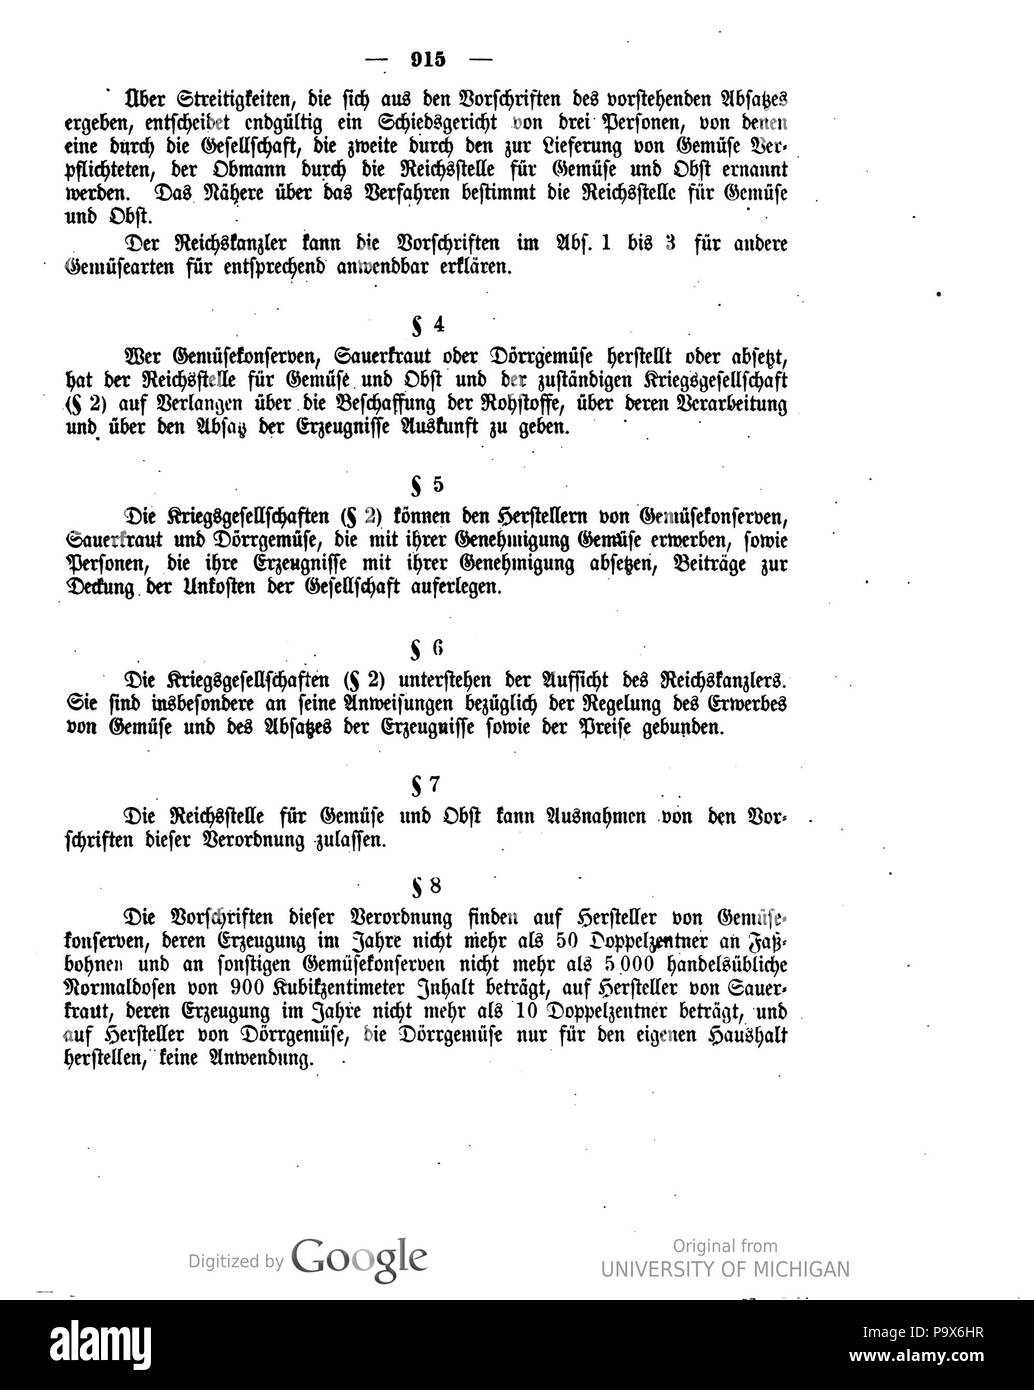 467 Deutsches Reichsgesetzblatt 1916 180 0915 Stock Photo